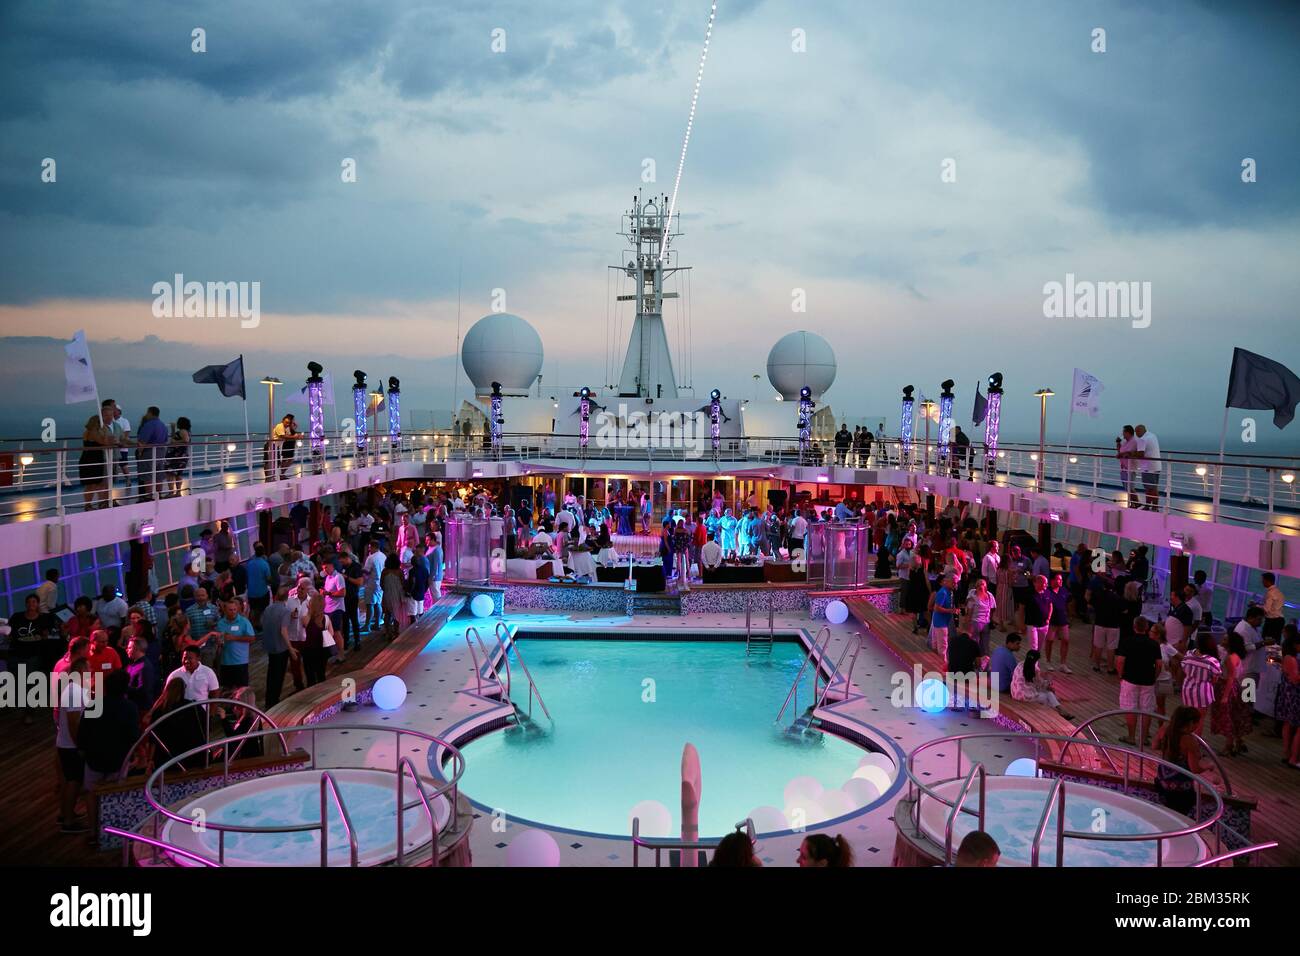 Une fête et une célébration colorées se déroulant au crépuscule sur le pont principal d'un bateau de croisière de luxe Banque D'Images